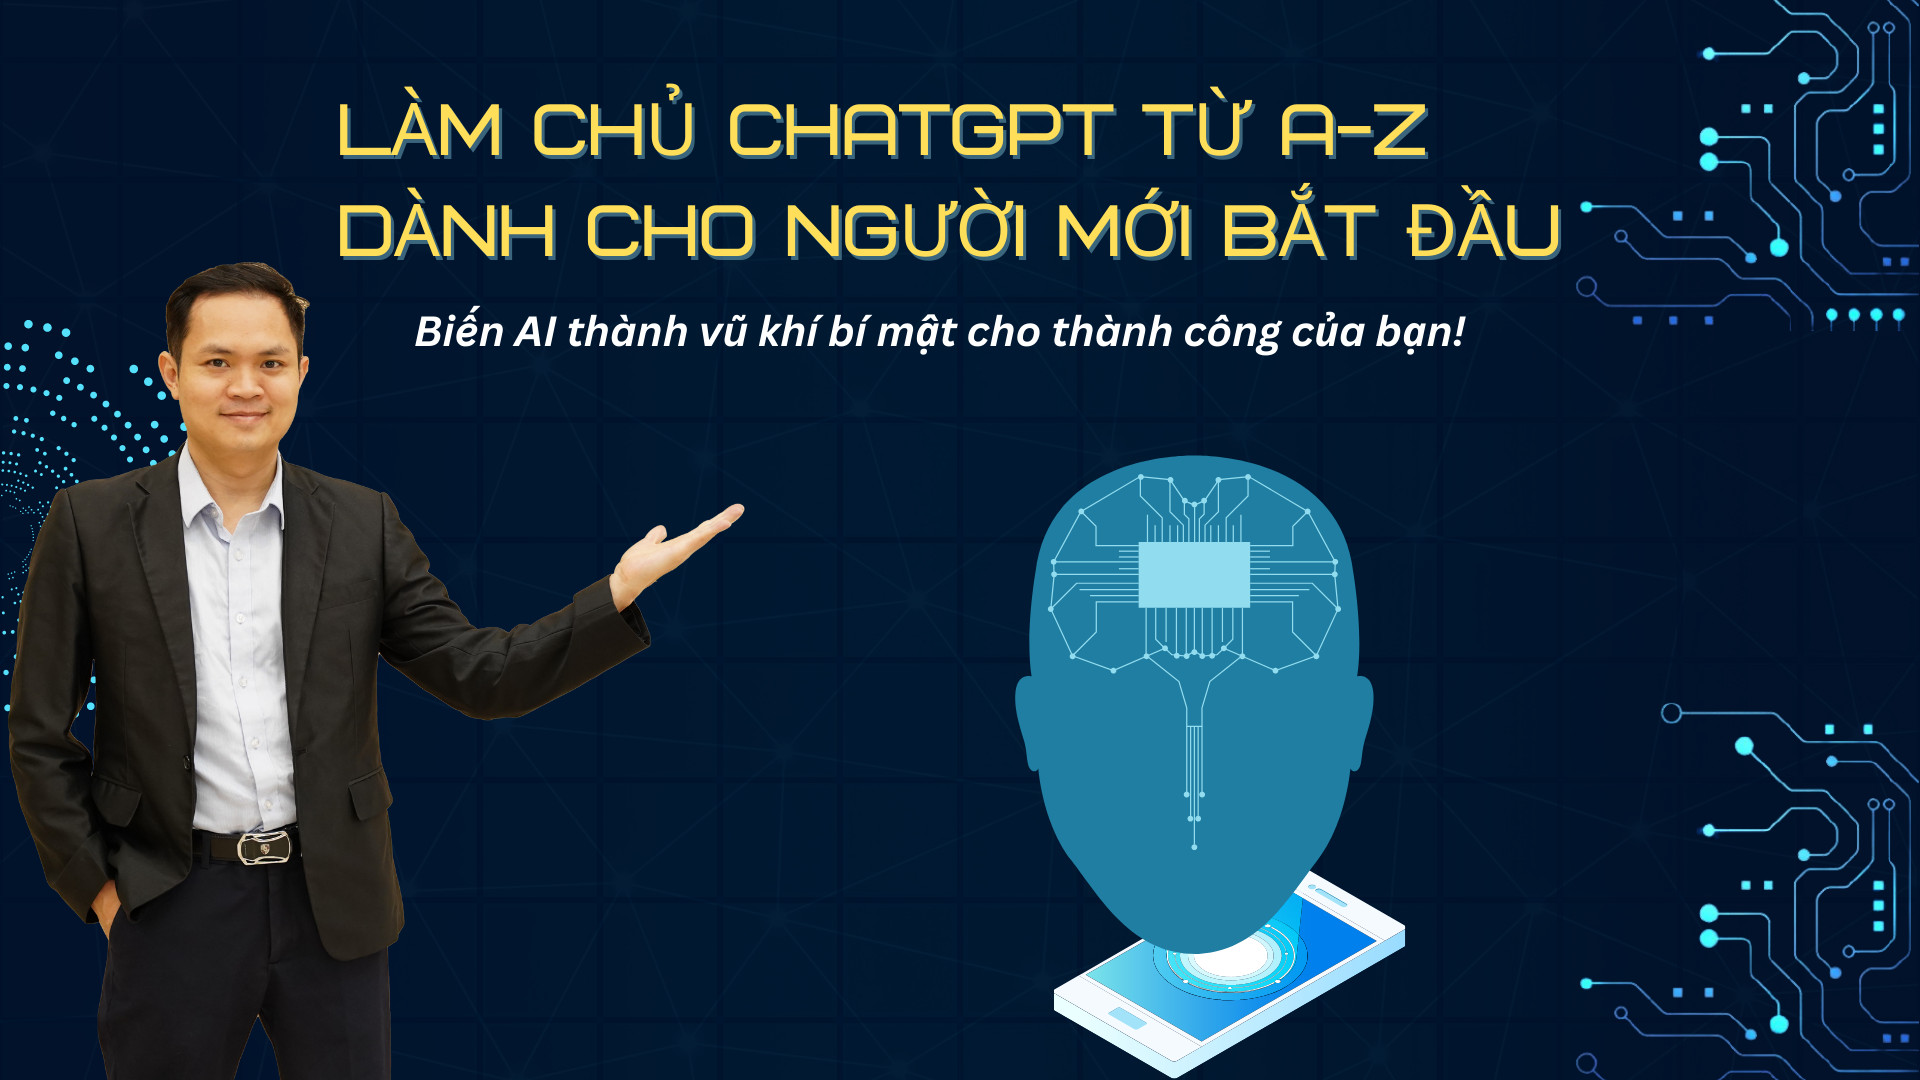 Làm Chủ ChatGPT từ A-Z Dành Cho Người Mới Bắt Đầu